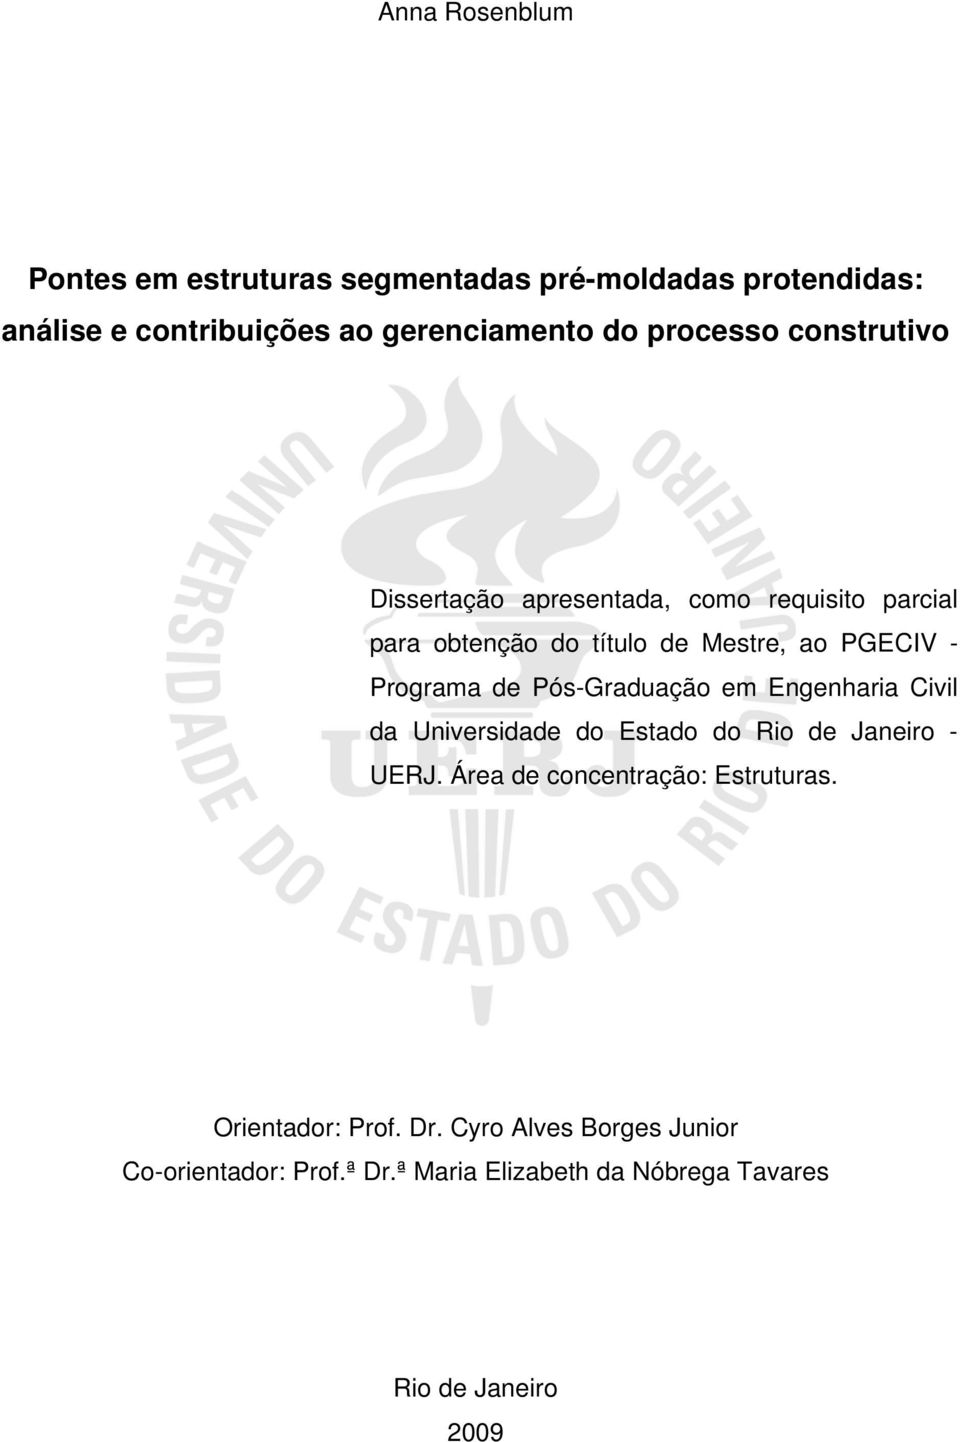 Programa de Pós-Graduação em Engenharia Civil da Universidade do Estado do Rio de Janeiro - UERJ.